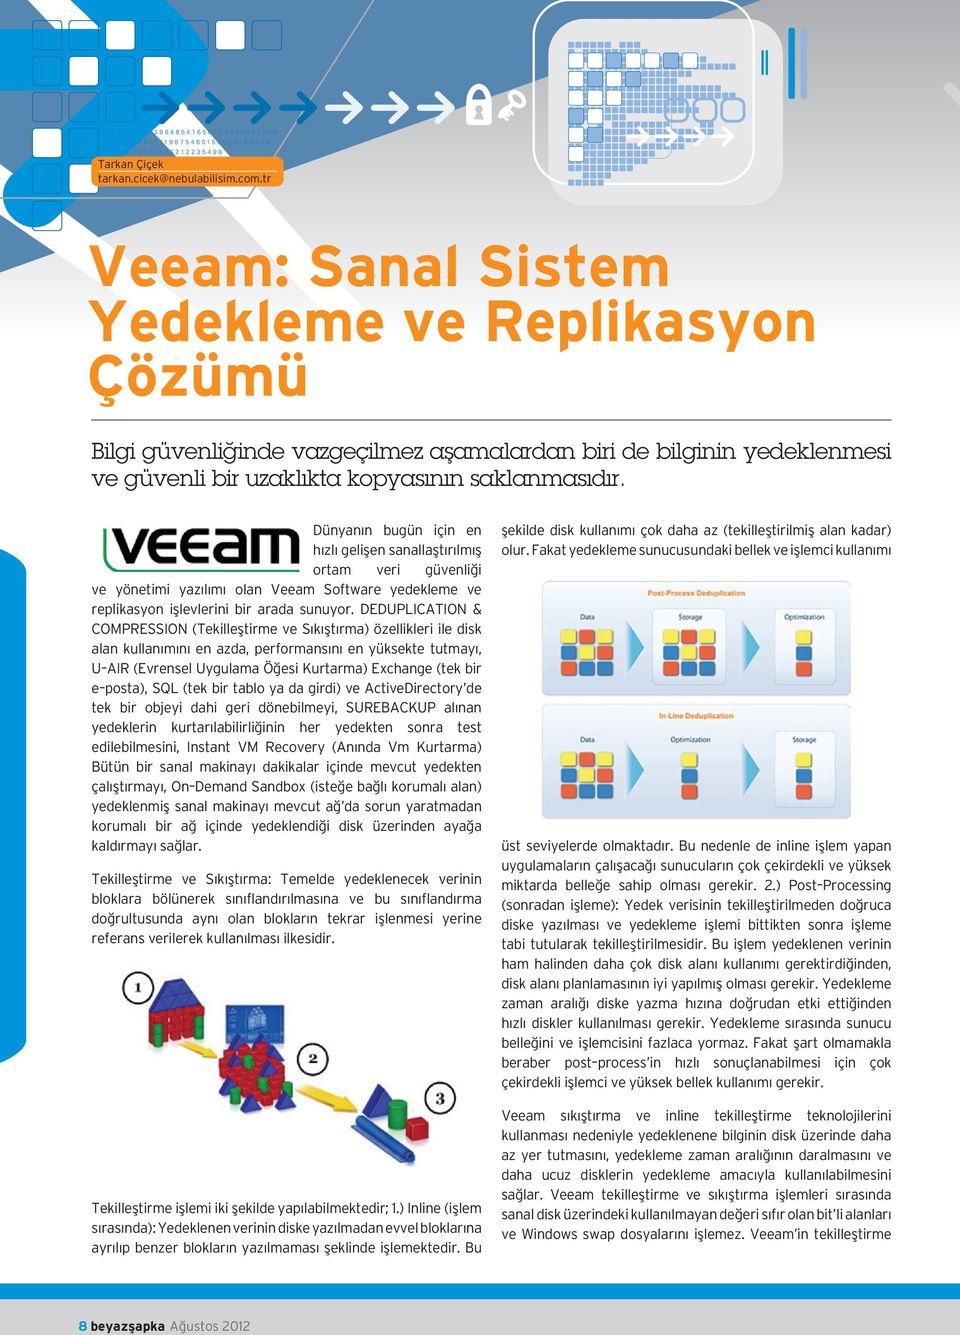 Dünyanın bugün için en hızlı gelişen sanallaştırılmış ortam veri güvenliği ve yönetimi yazılımı olan Veeam Software yedekleme ve replikasyon işlevlerini bir arada sunuyor.